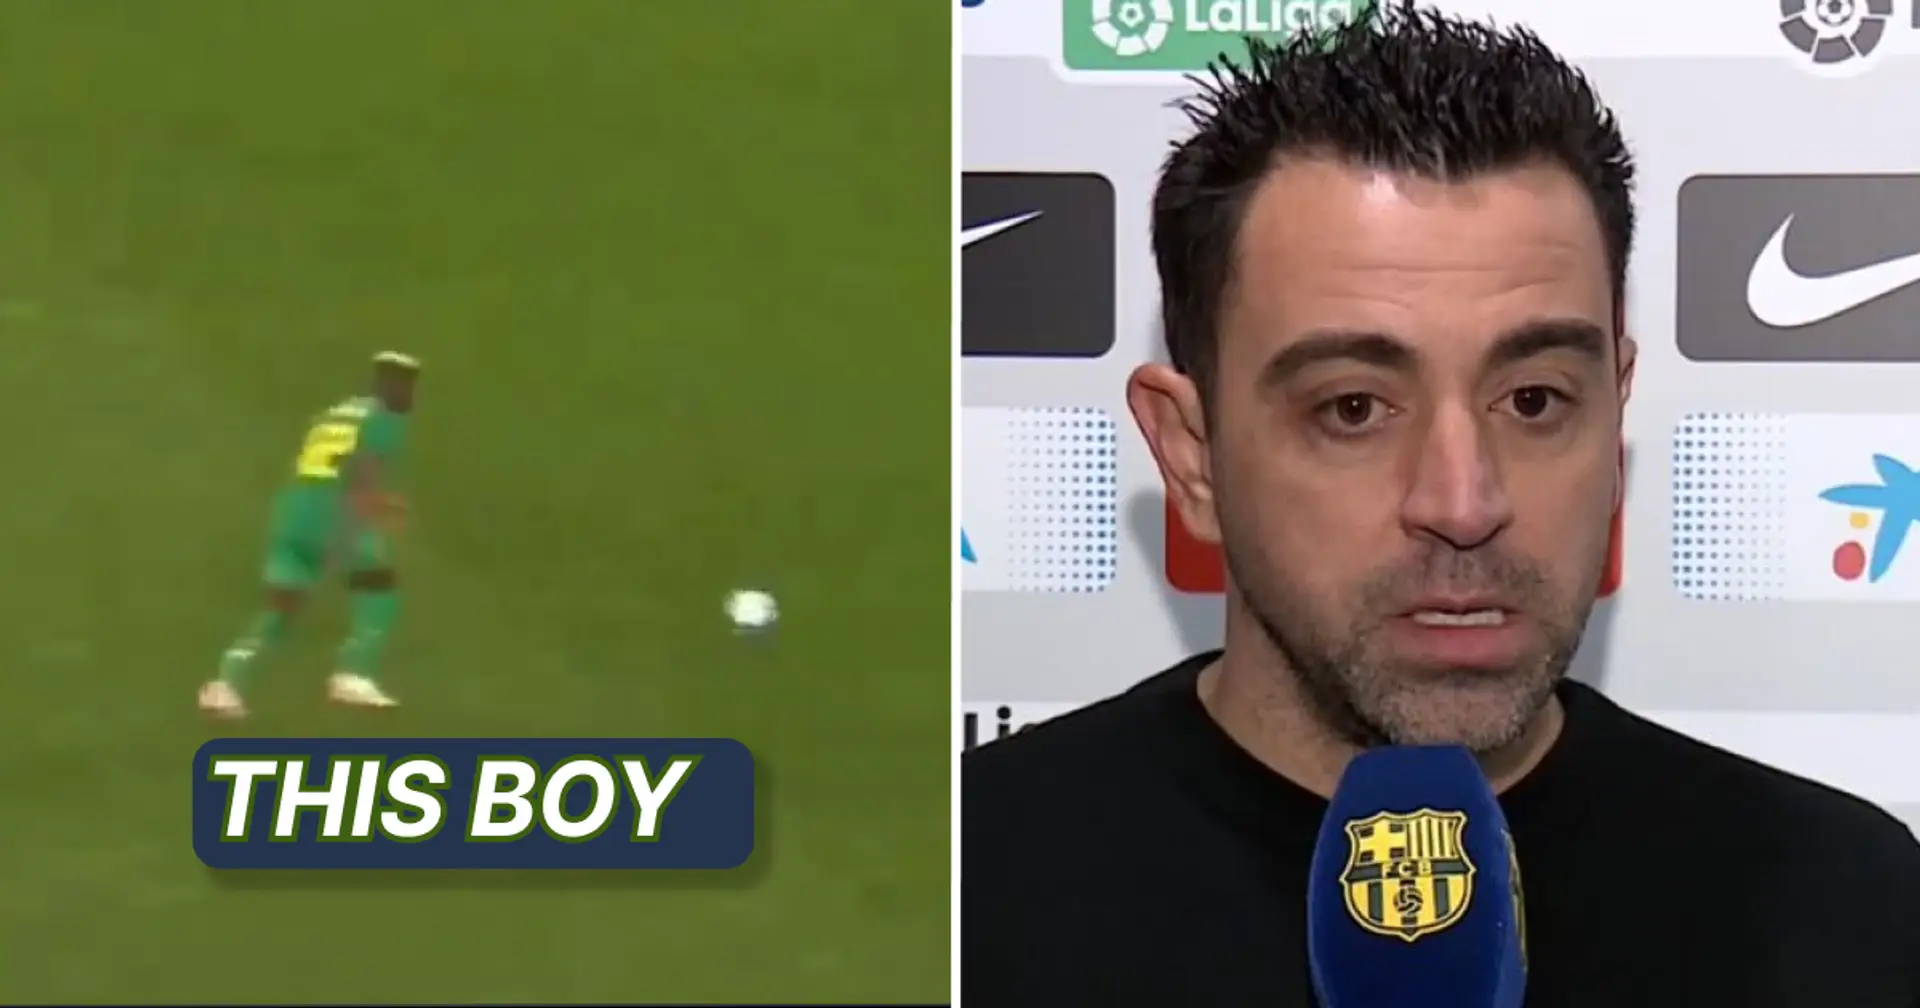 Los fanáticos del Barça llaman la atención de Xavi mientras el talento adolescente hace maravillas para su selección, no es Cubarsi